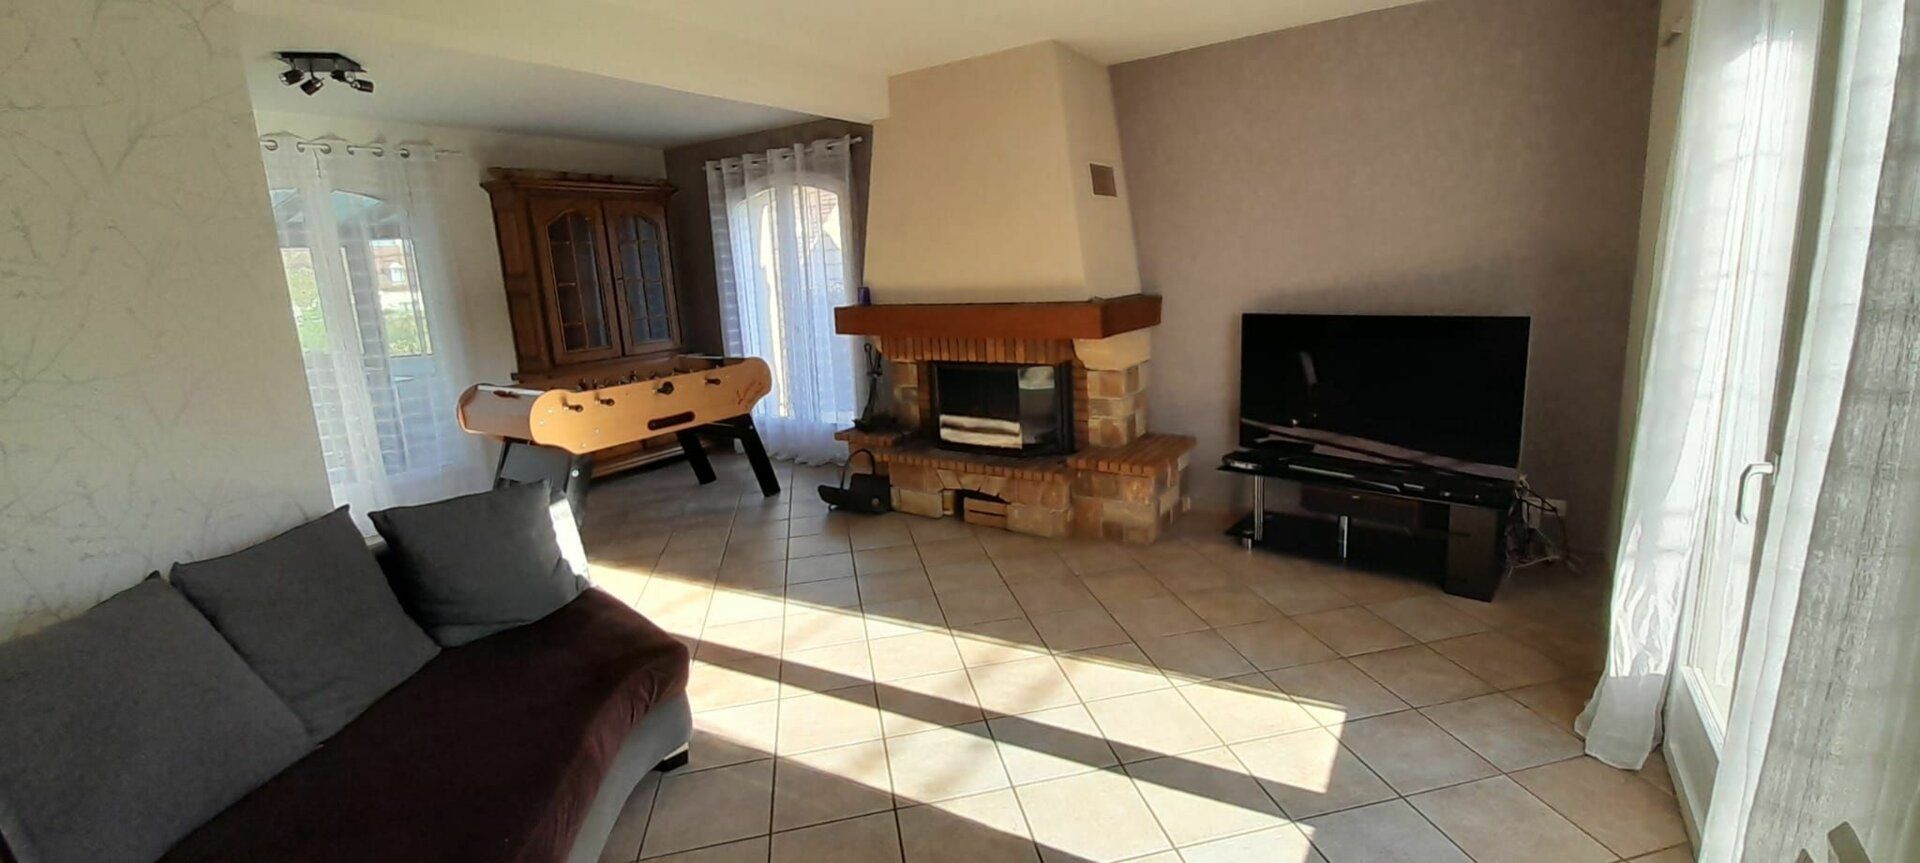 Maison à vendre 6 134m2 à Saint-Fargeau-Ponthierry vignette-4